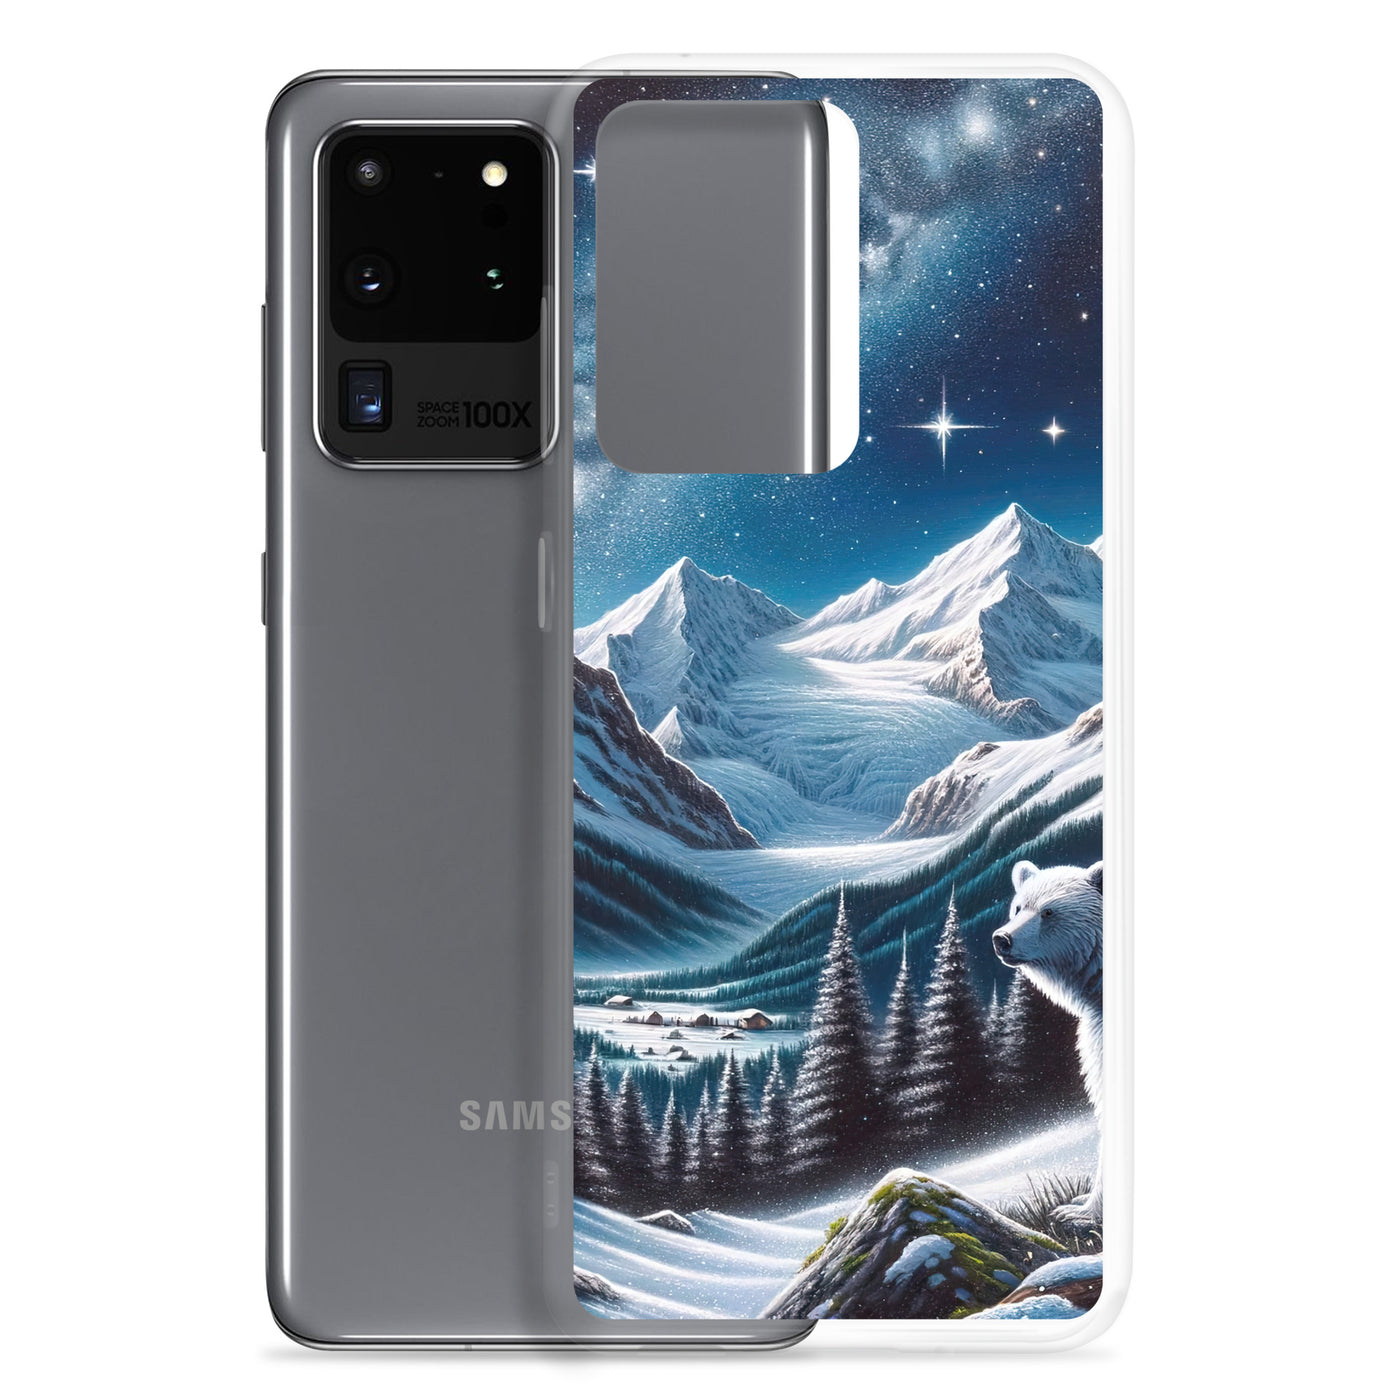 Sternennacht und Eisbär: Acrylgemälde mit Milchstraße, Alpen und schneebedeckte Gipfel - Samsung Schutzhülle (durchsichtig) camping xxx yyy zzz